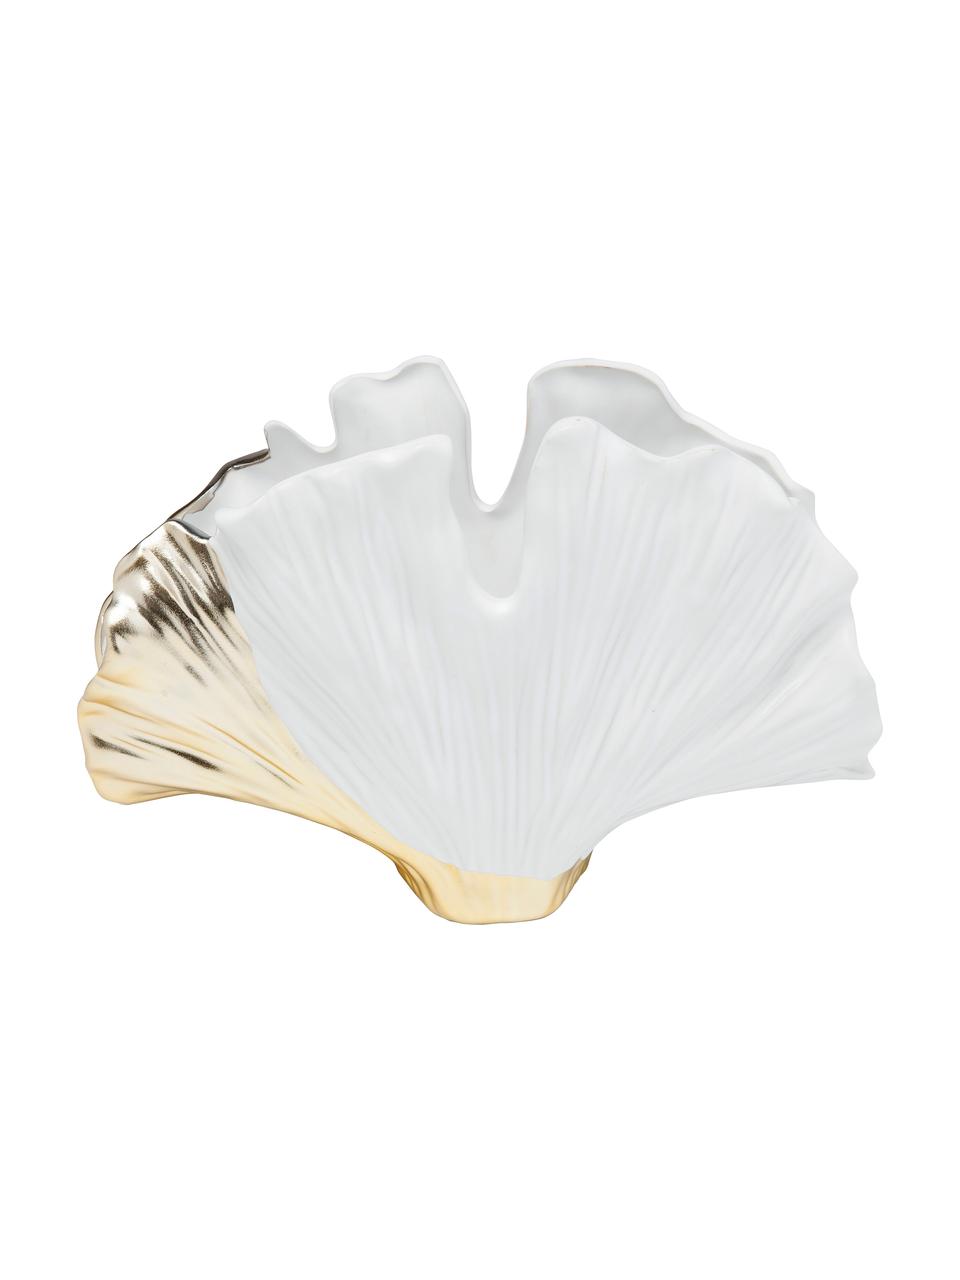 Jarrón de cerámica de diseño Ginkgo Elegance, Cerámica esmaltada, Blanco, dorado, An 26 x Al 18 cm